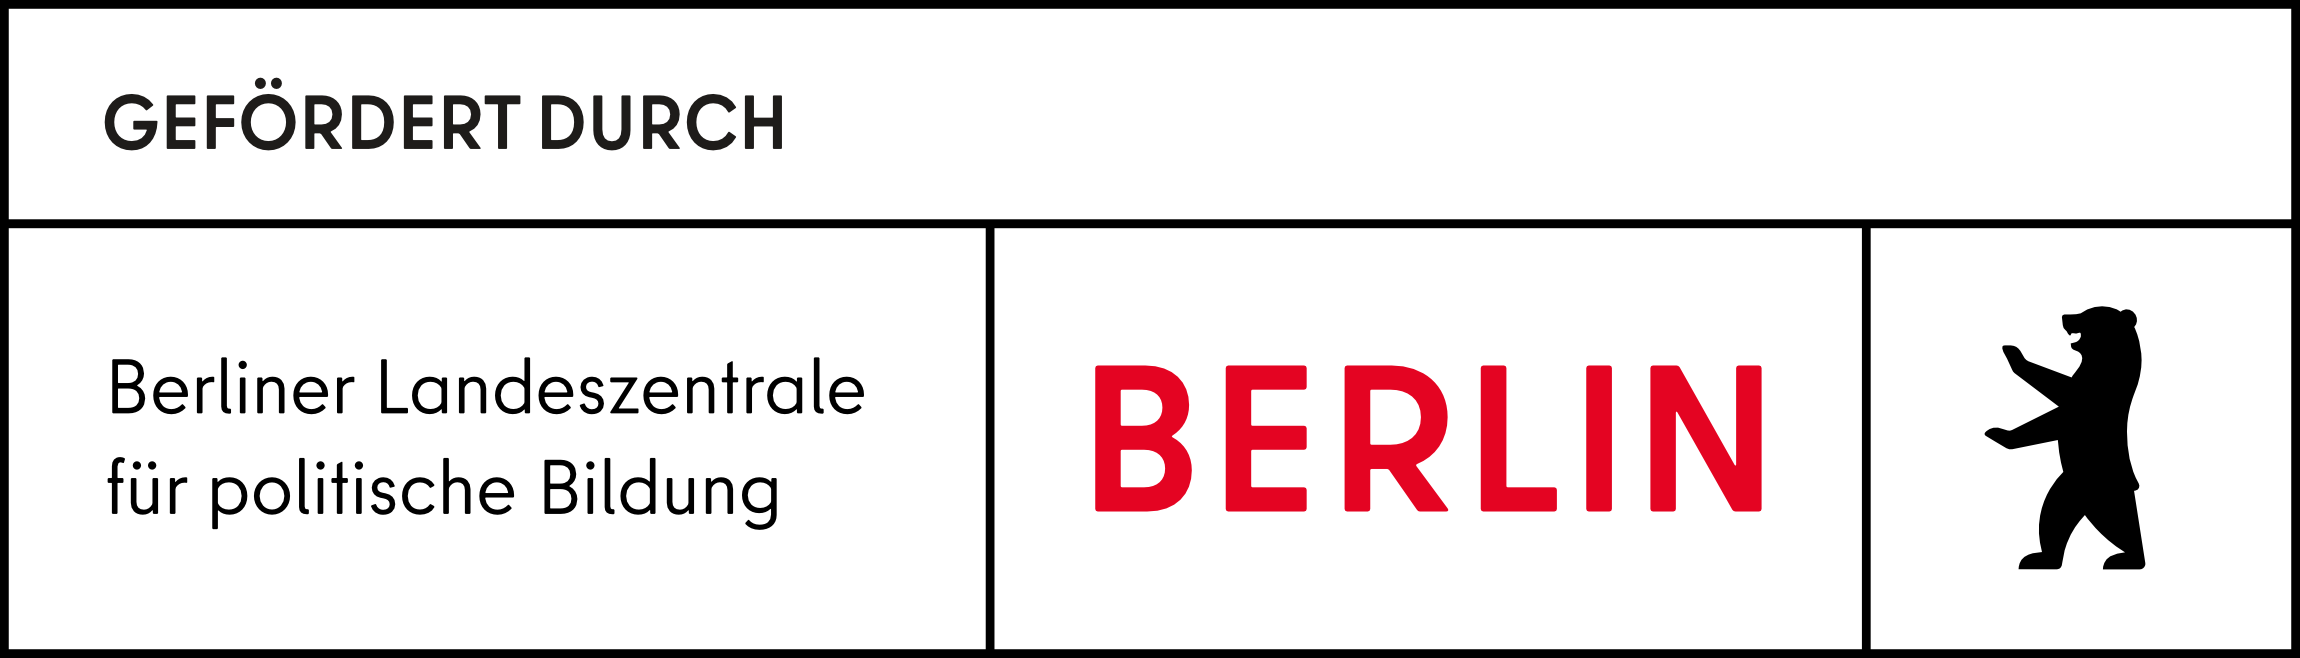 berliner landeszentrale fur politische bildung logo